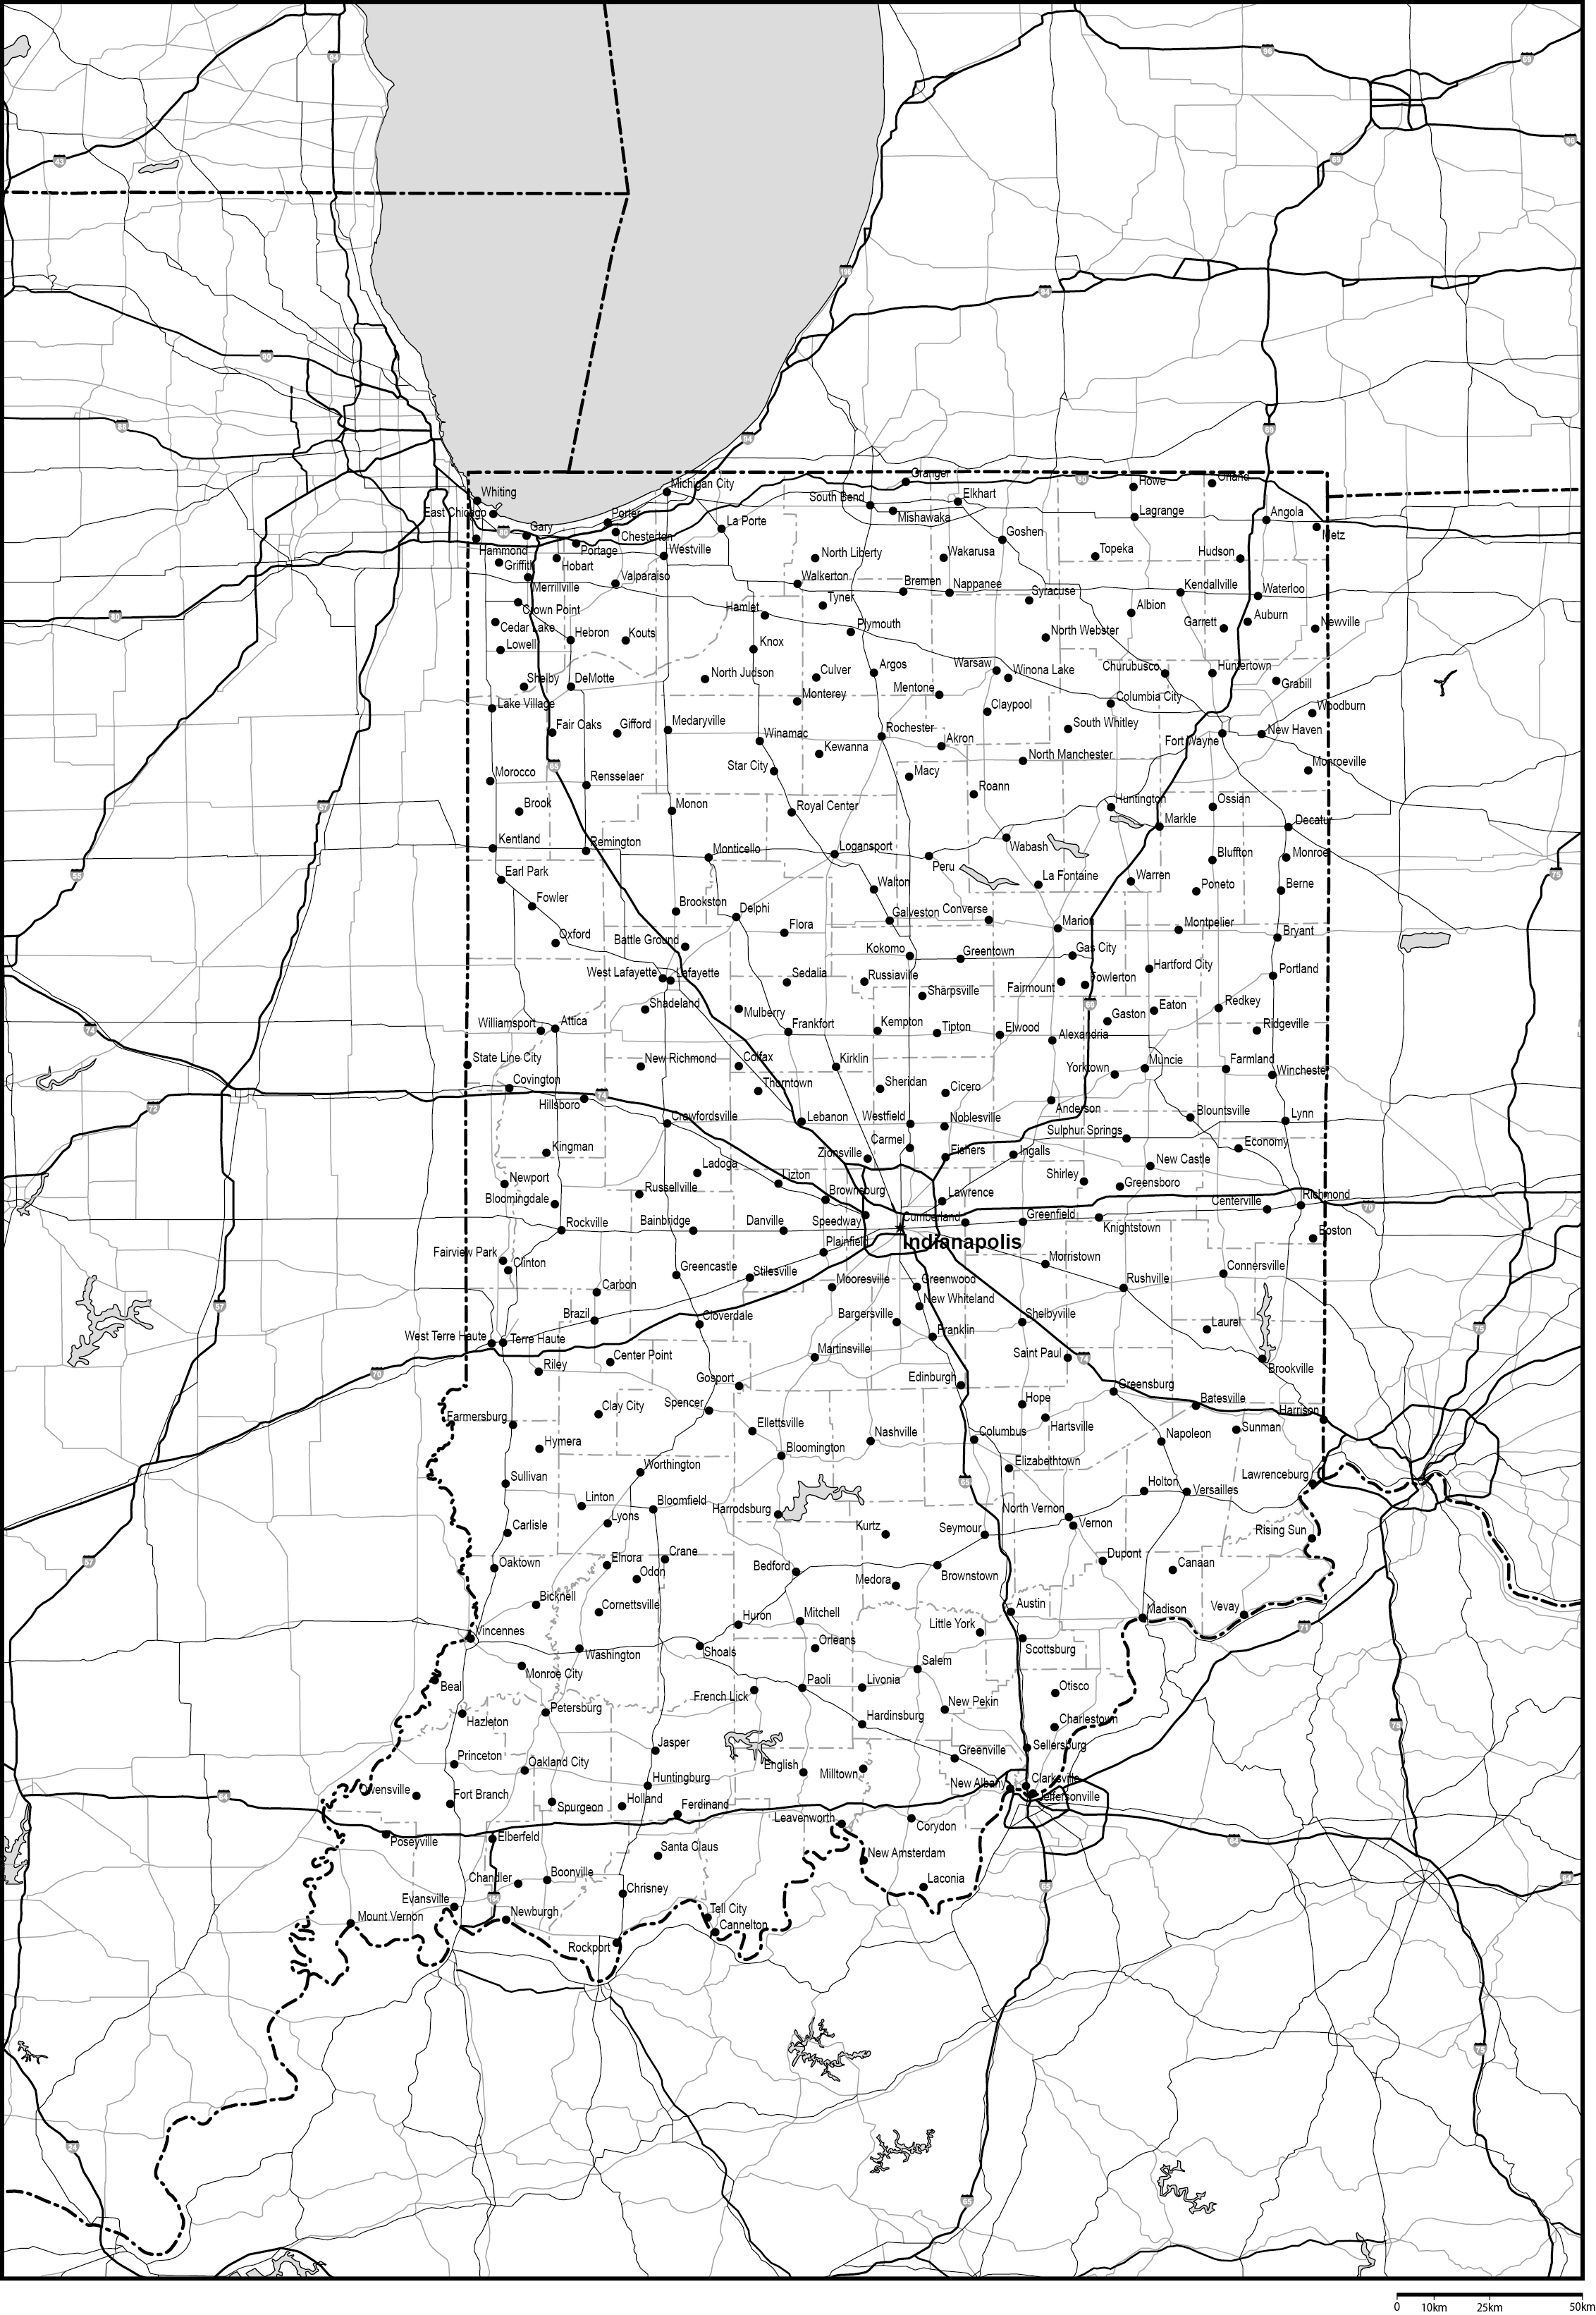 インディアナ州郡分け白地図州都・主な都市・道路あり(英語)フリーデータの画像